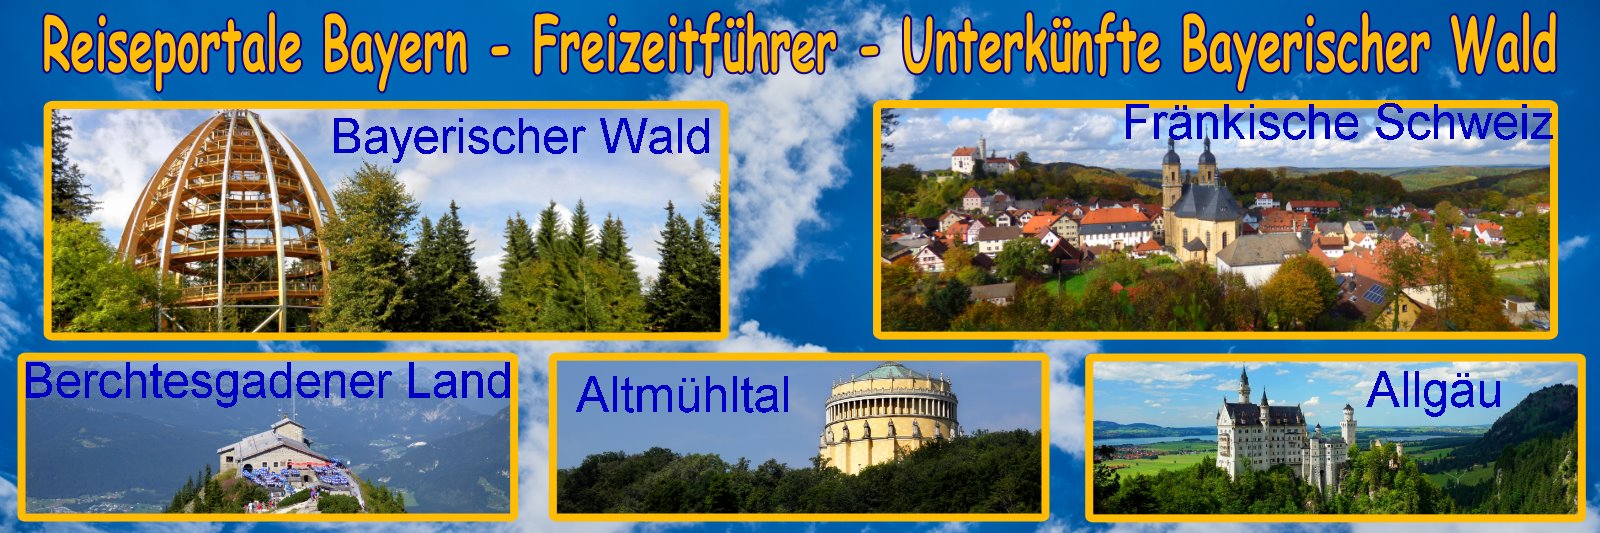 reiseportale-bayern-freizeitfuehrer-bayerischer-wald-städtereisen